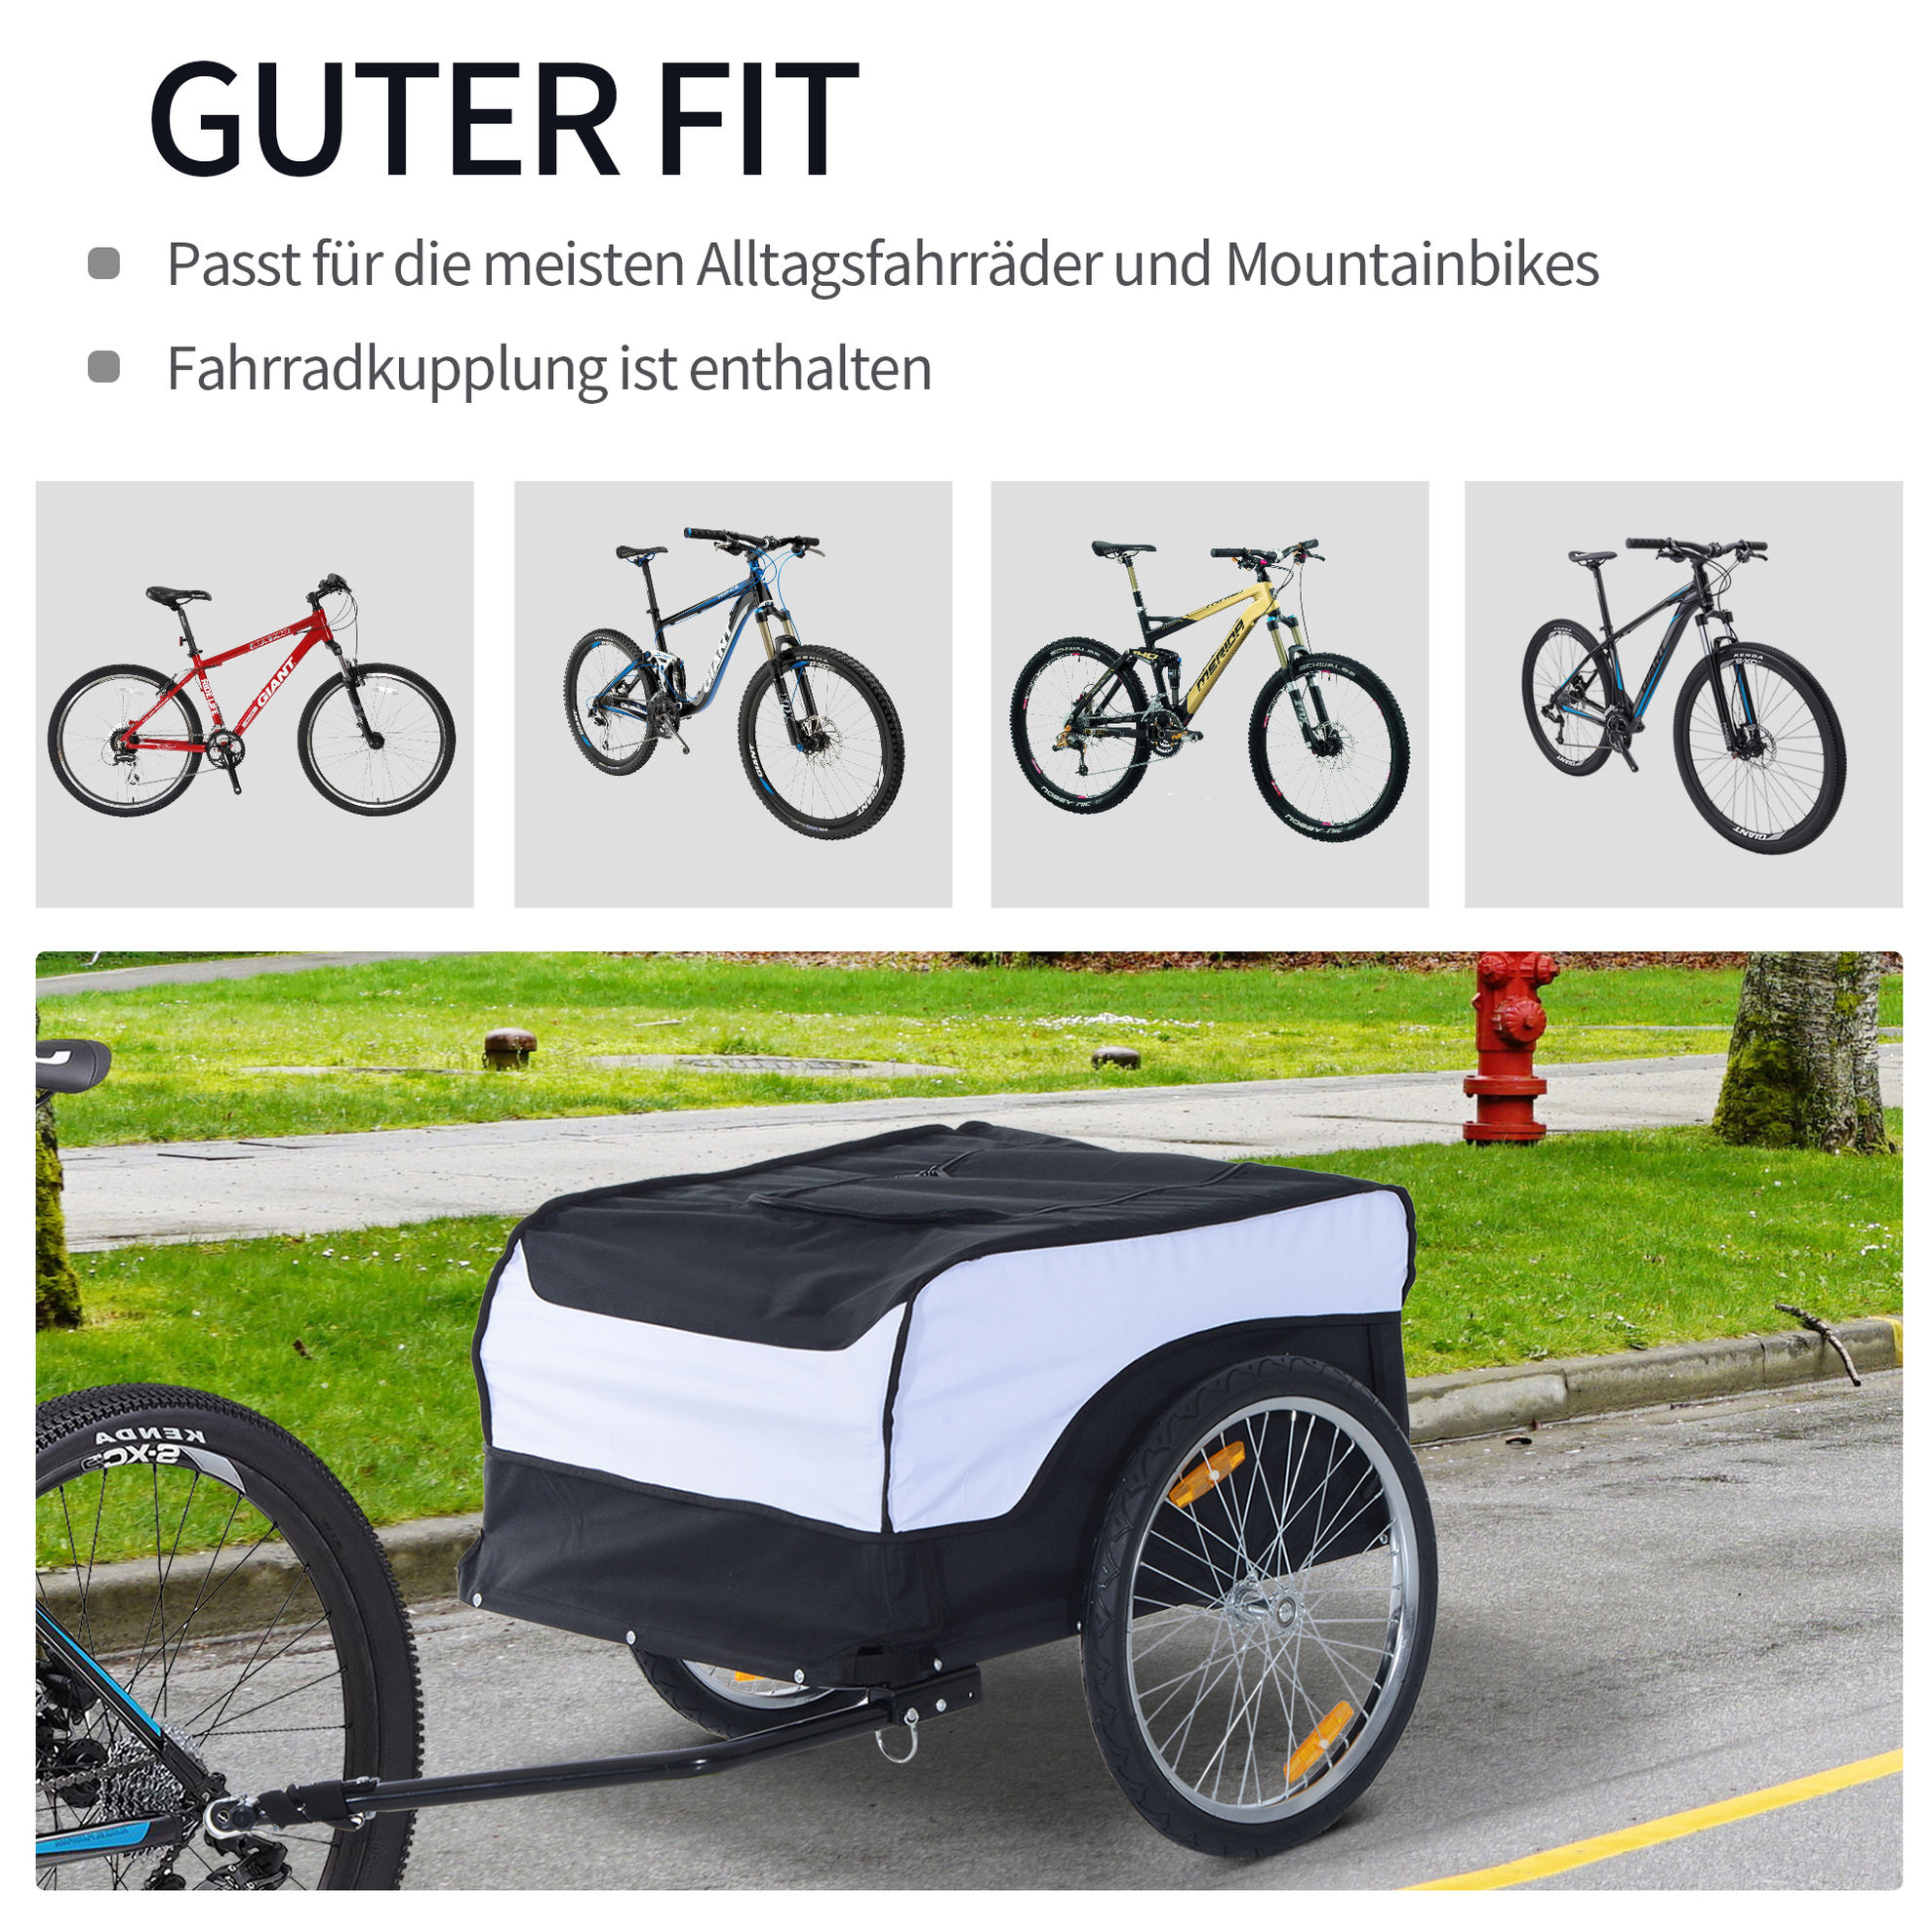 Transportanhänger fürs Fahrrad Farbe: weiß, schwarz | Weltbild.de